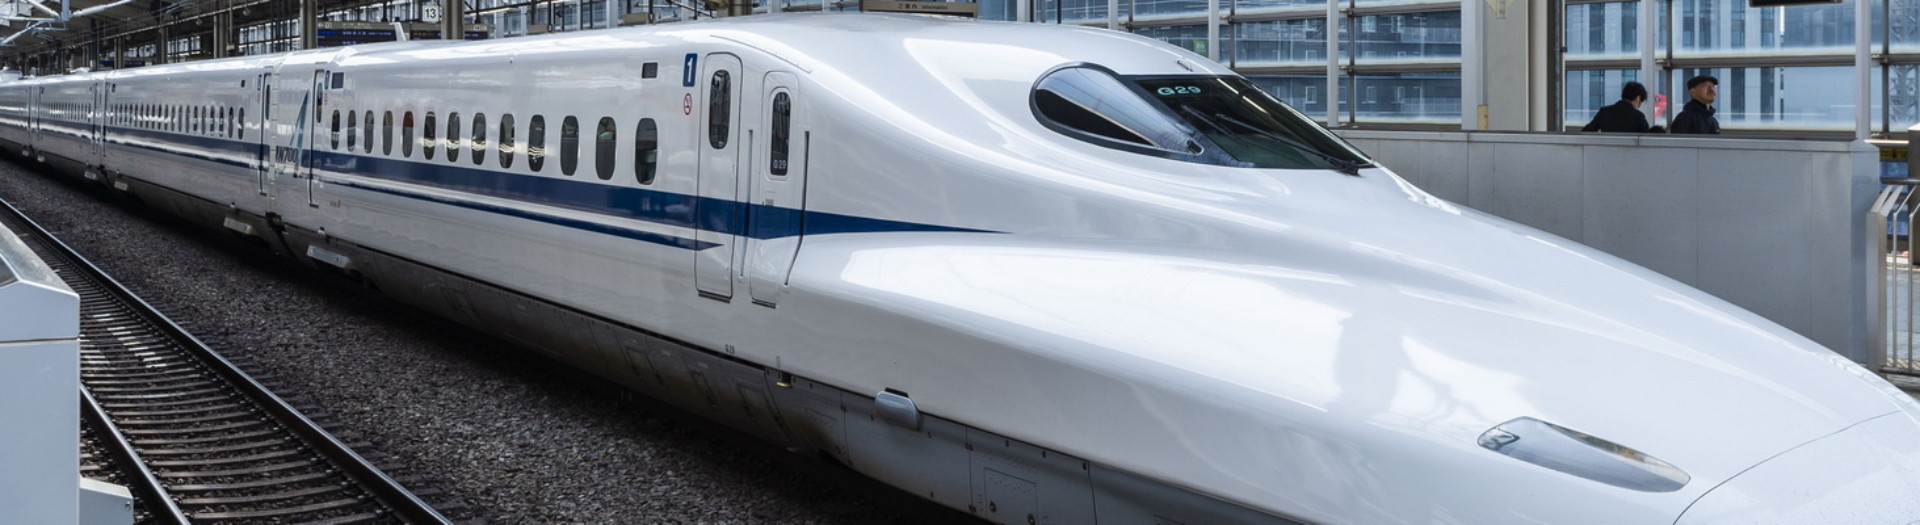 The N700 series is a Japanese Shinkansen high-speed train